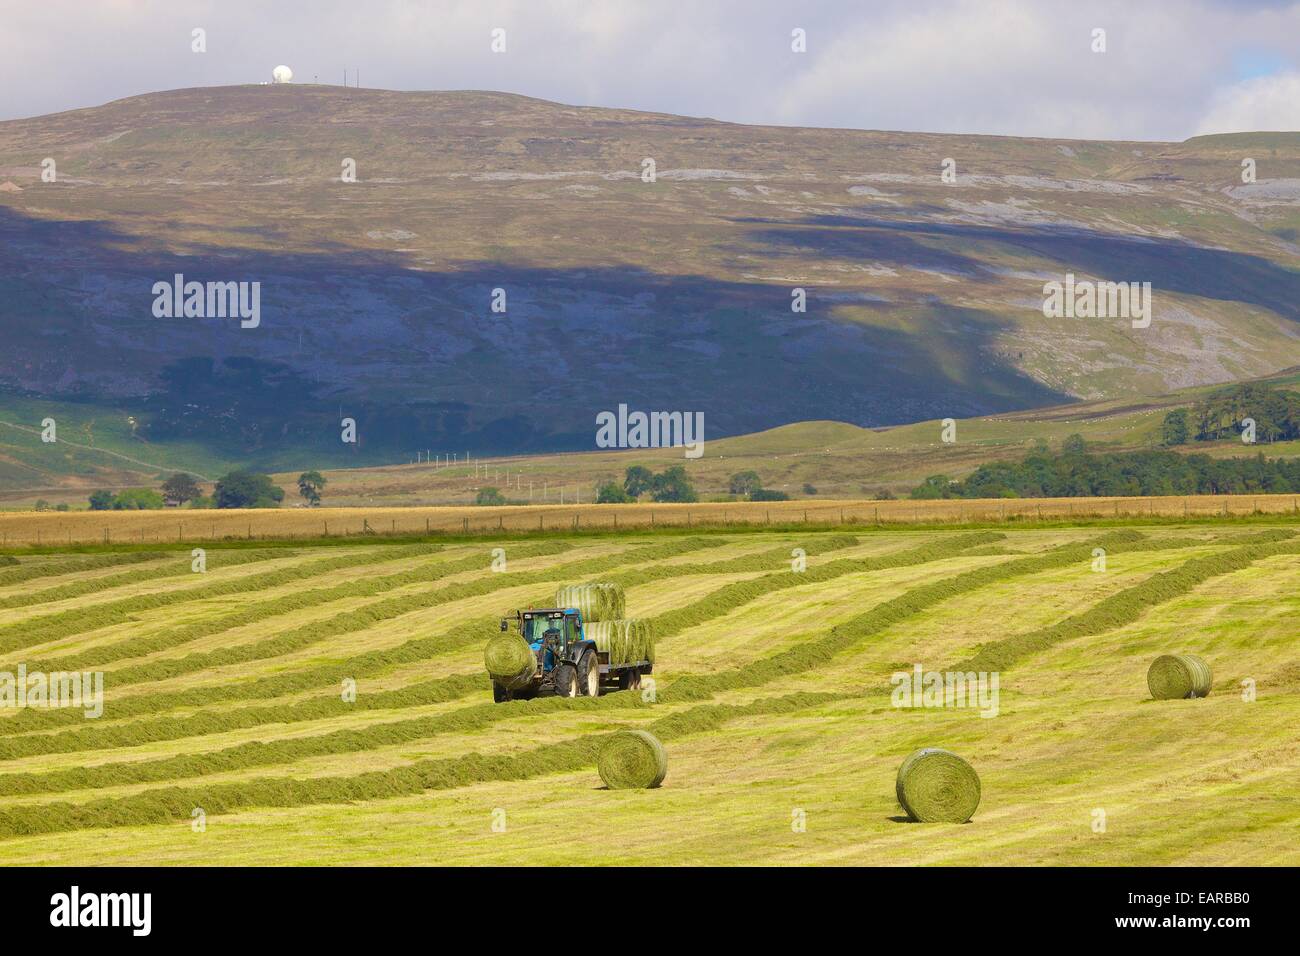 Le tracteur et la remorque qui transporte des ballots de foin de la station radar ci-dessous. Great Dun Fell, Eden Valley, Cumbria, England, UK. Banque D'Images